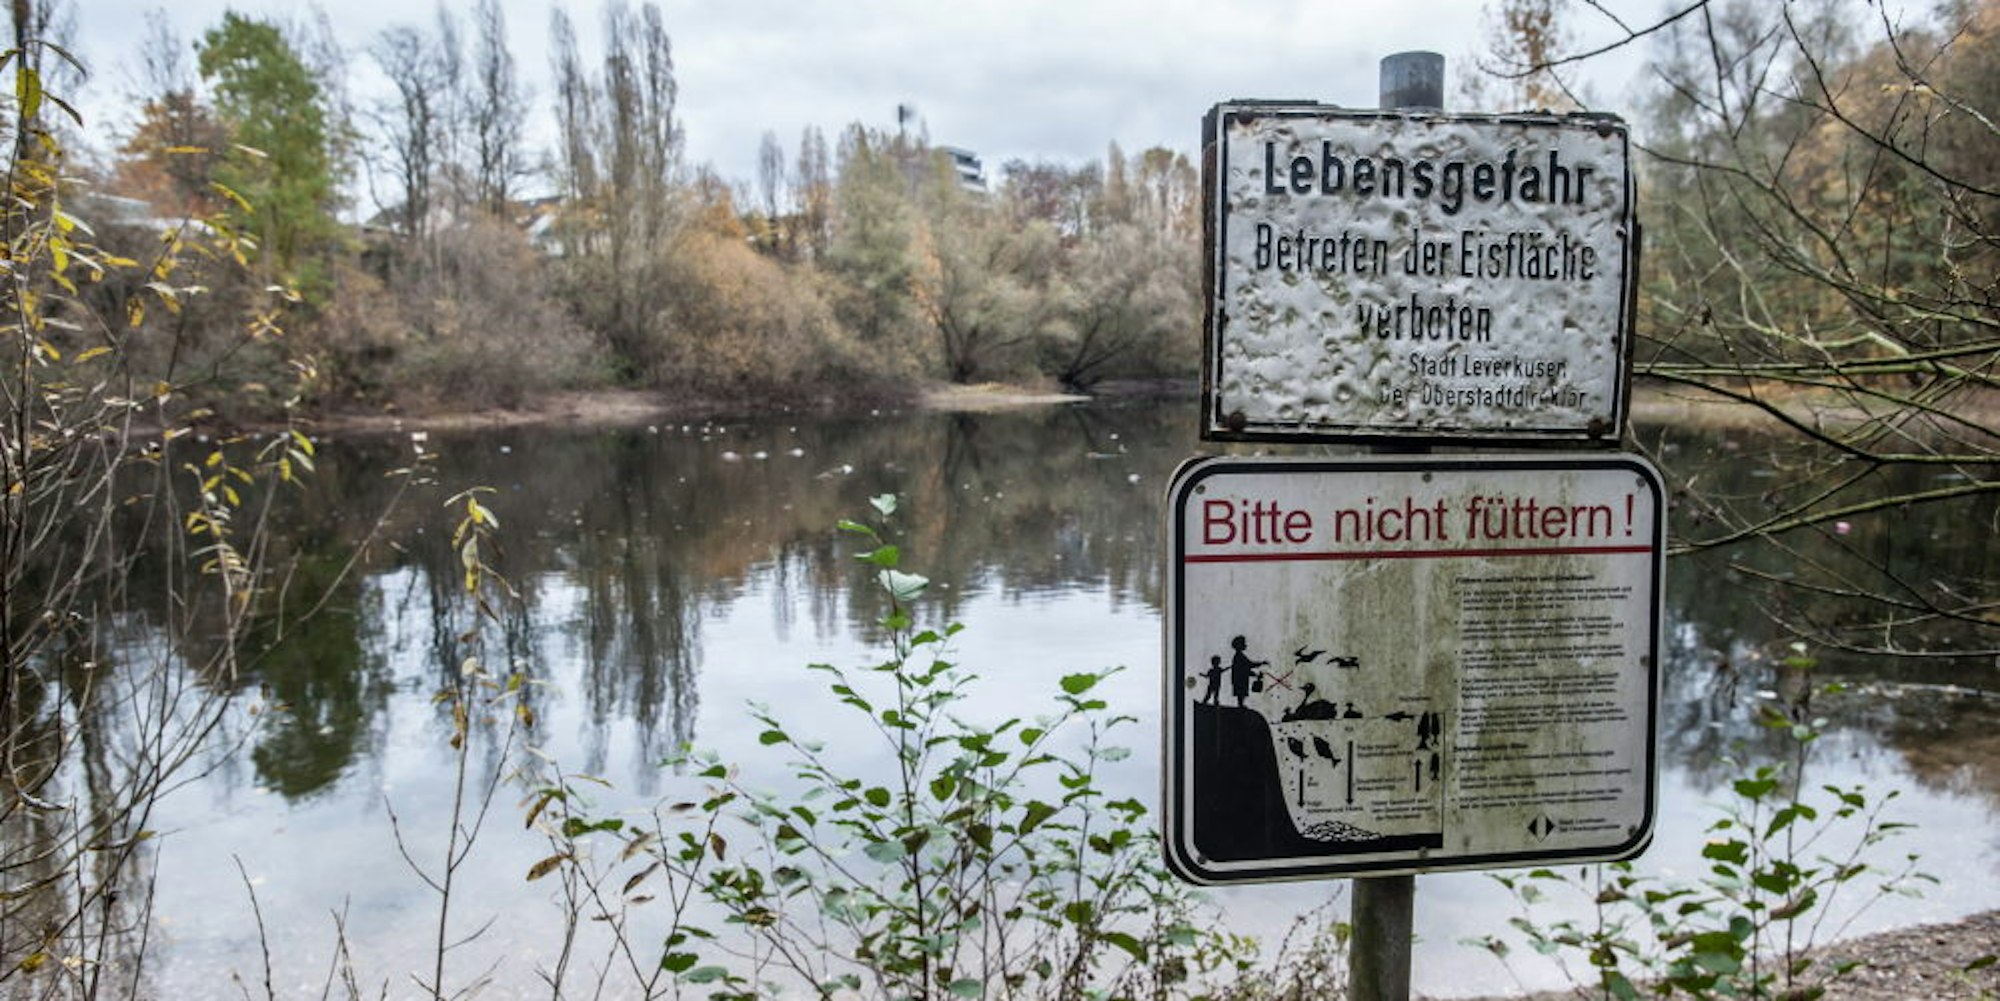 Im Rheindorfer See wurden Hechte ausgesetzt, um ihn ökologisch ins Gleichgewicht zu bringen.